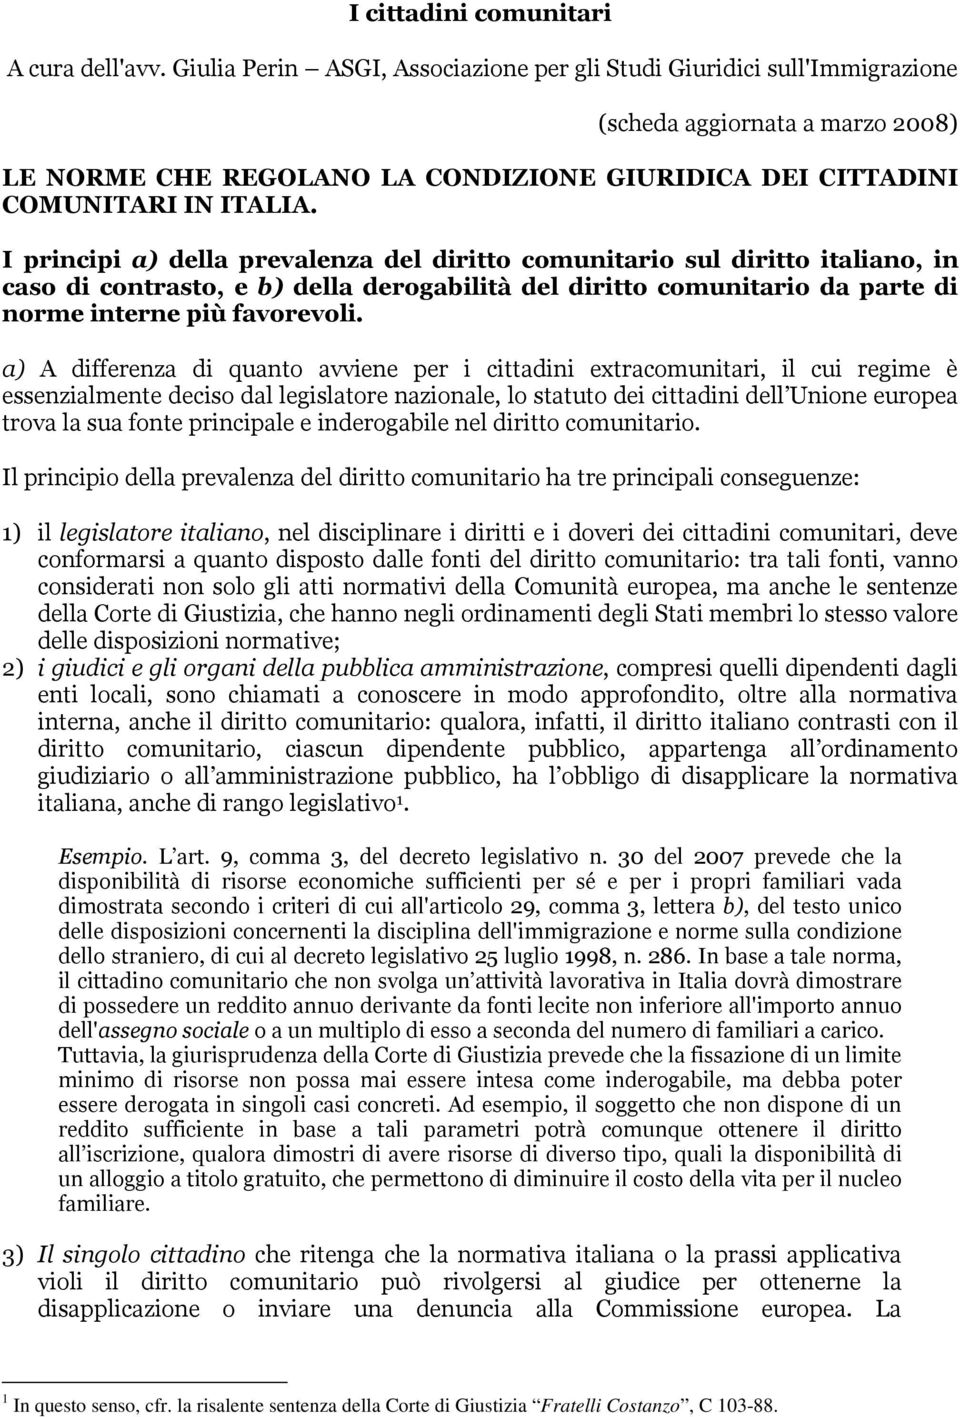 I principi a) della prevalenza del diritto comunitario sul diritto italiano, in caso di contrasto, e b) della derogabilità del diritto comunitario da parte di norme interne più favorevoli.